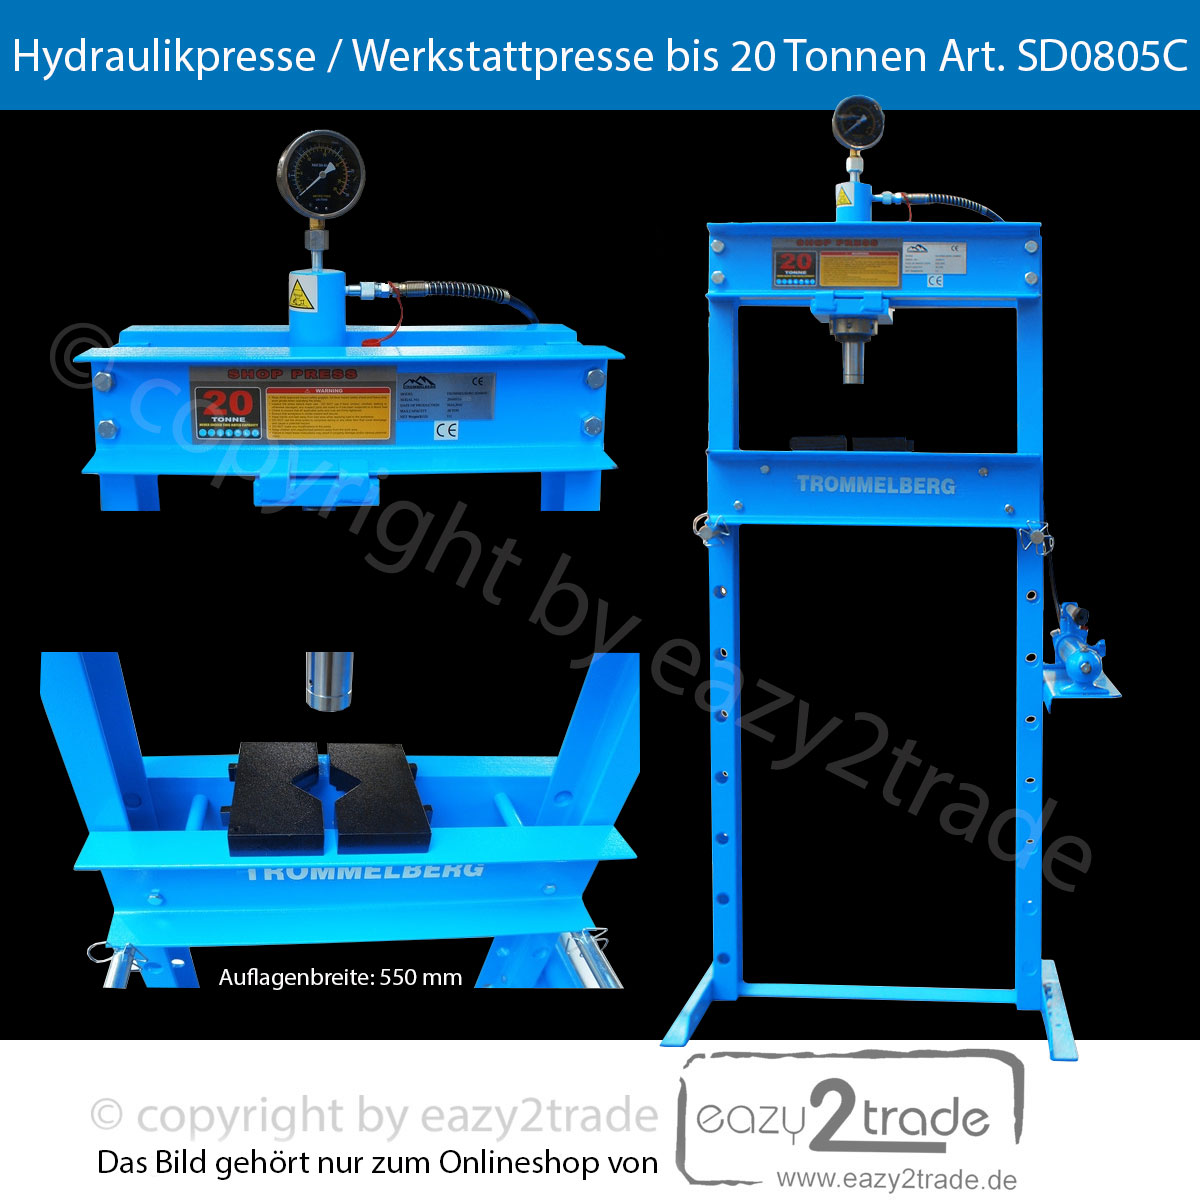 https://www.eazy2trade.de/media/images/org/werkstattpresse-hydraulikpresse-bis-20t-20-t-tonnen-SD0805C-trommelberg.jpg